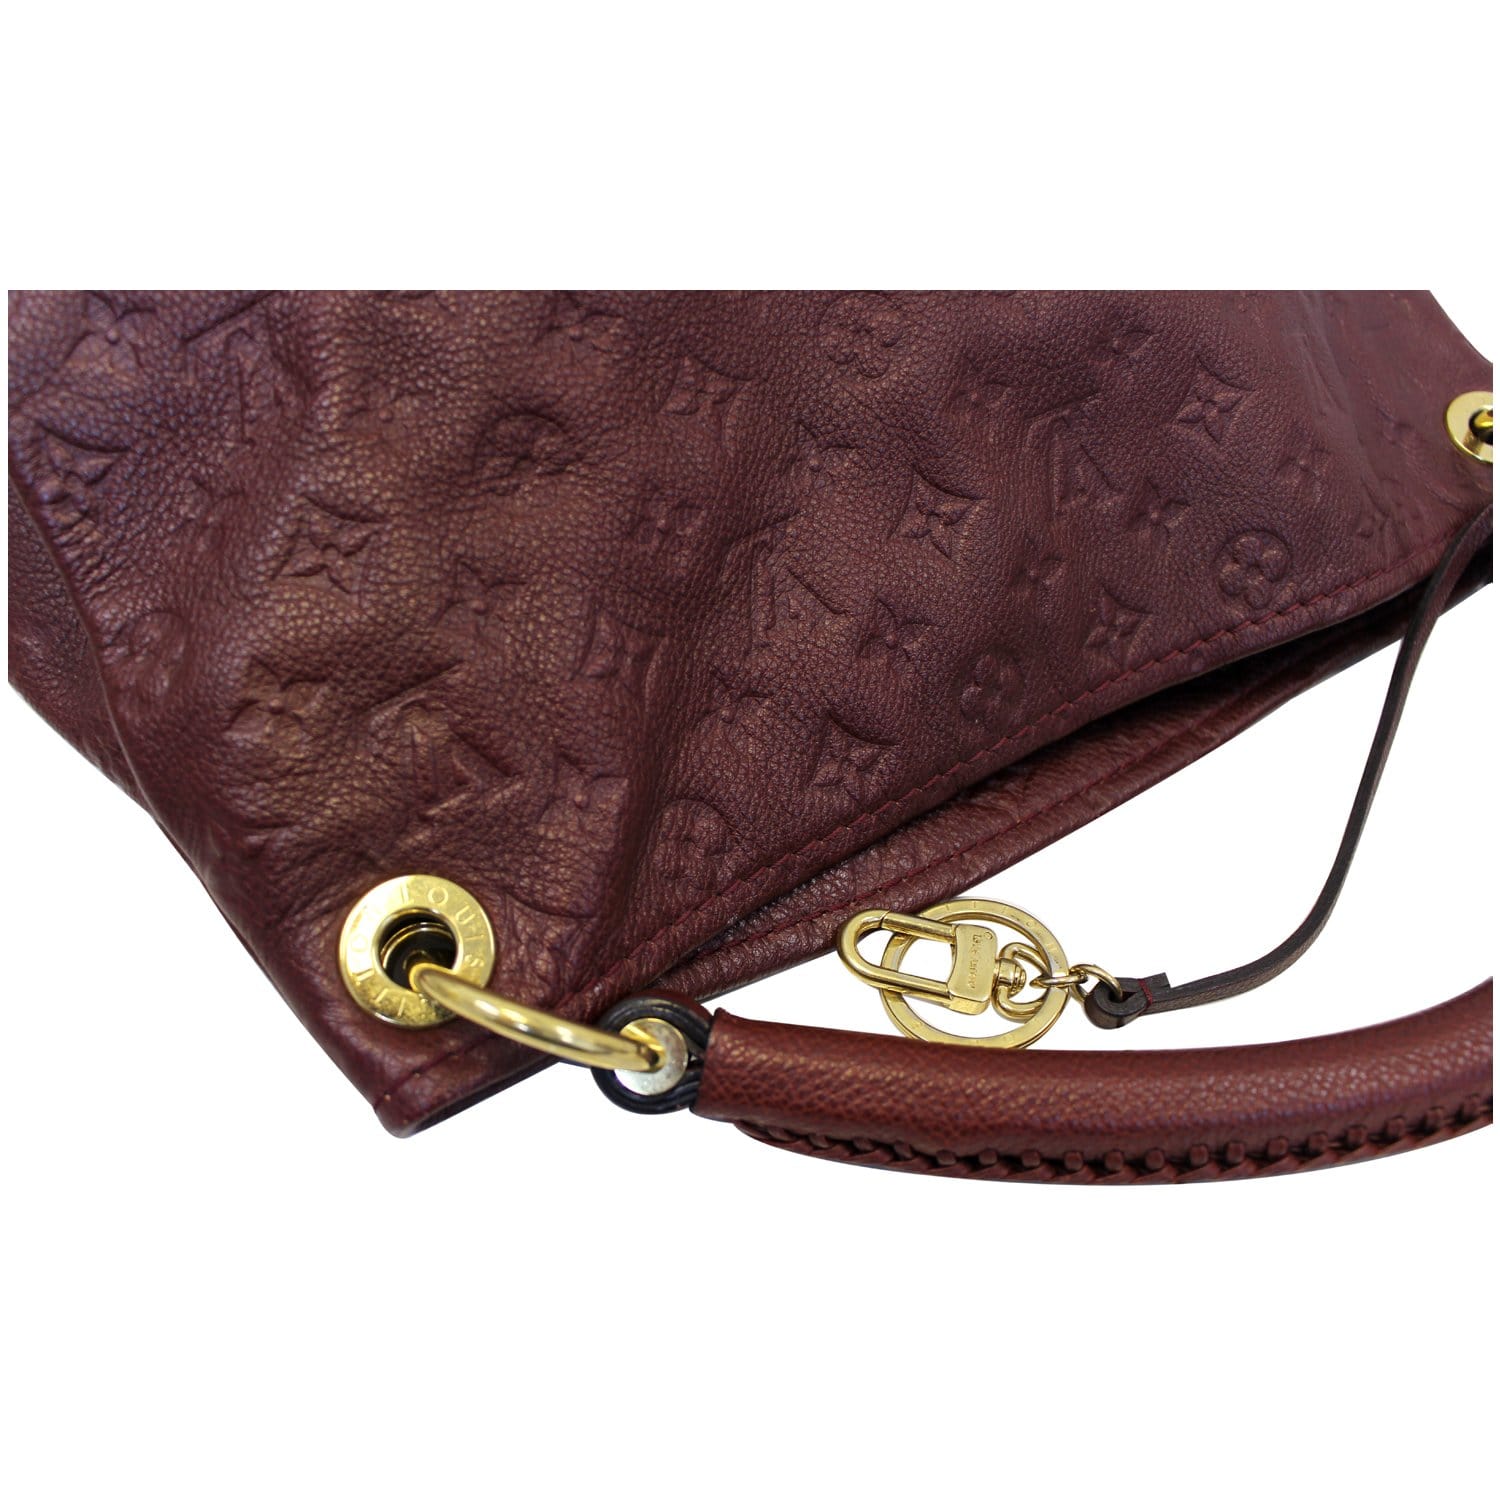 Louis Vuitton Artsy MM Monogram Shoulder Bag - Lv Artsy Bag